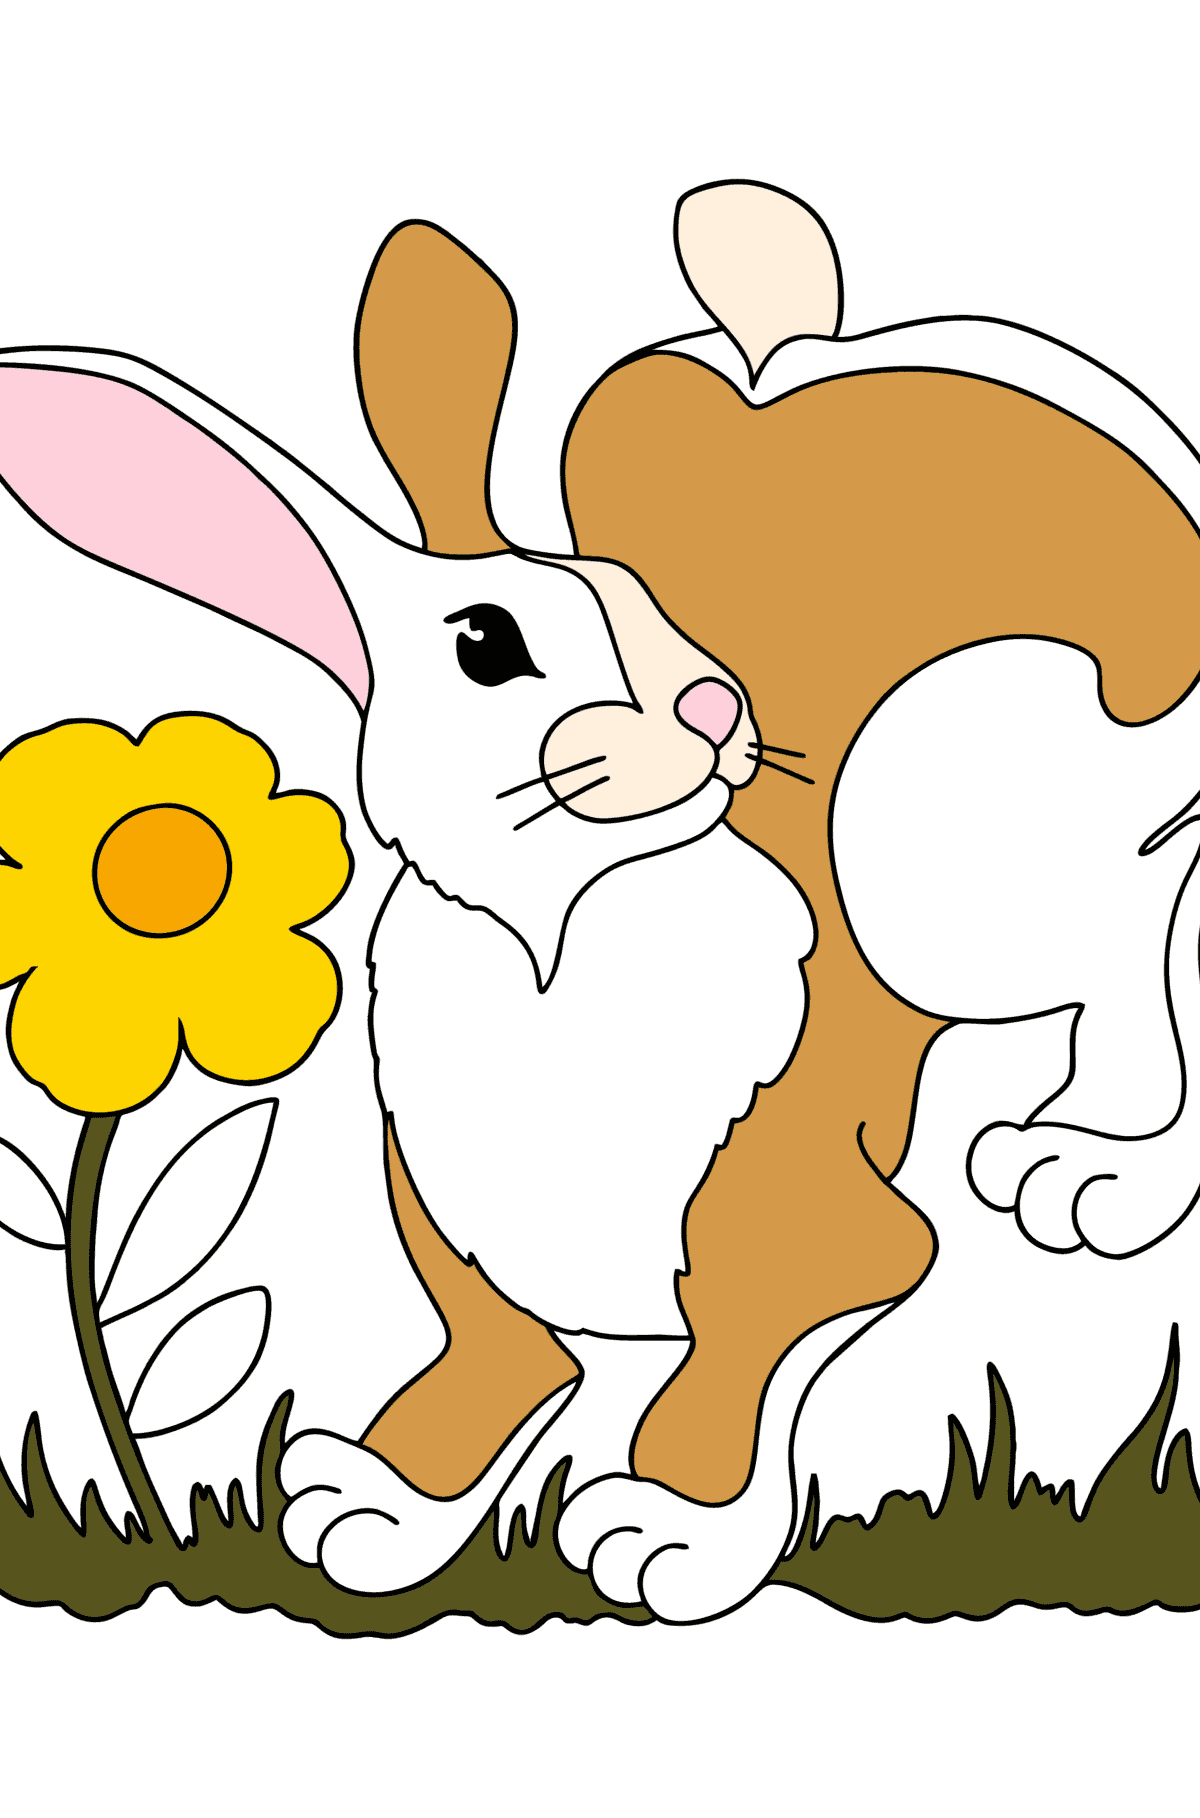 Kleurplaat klein konijntje - kleurplaten voor kinderen